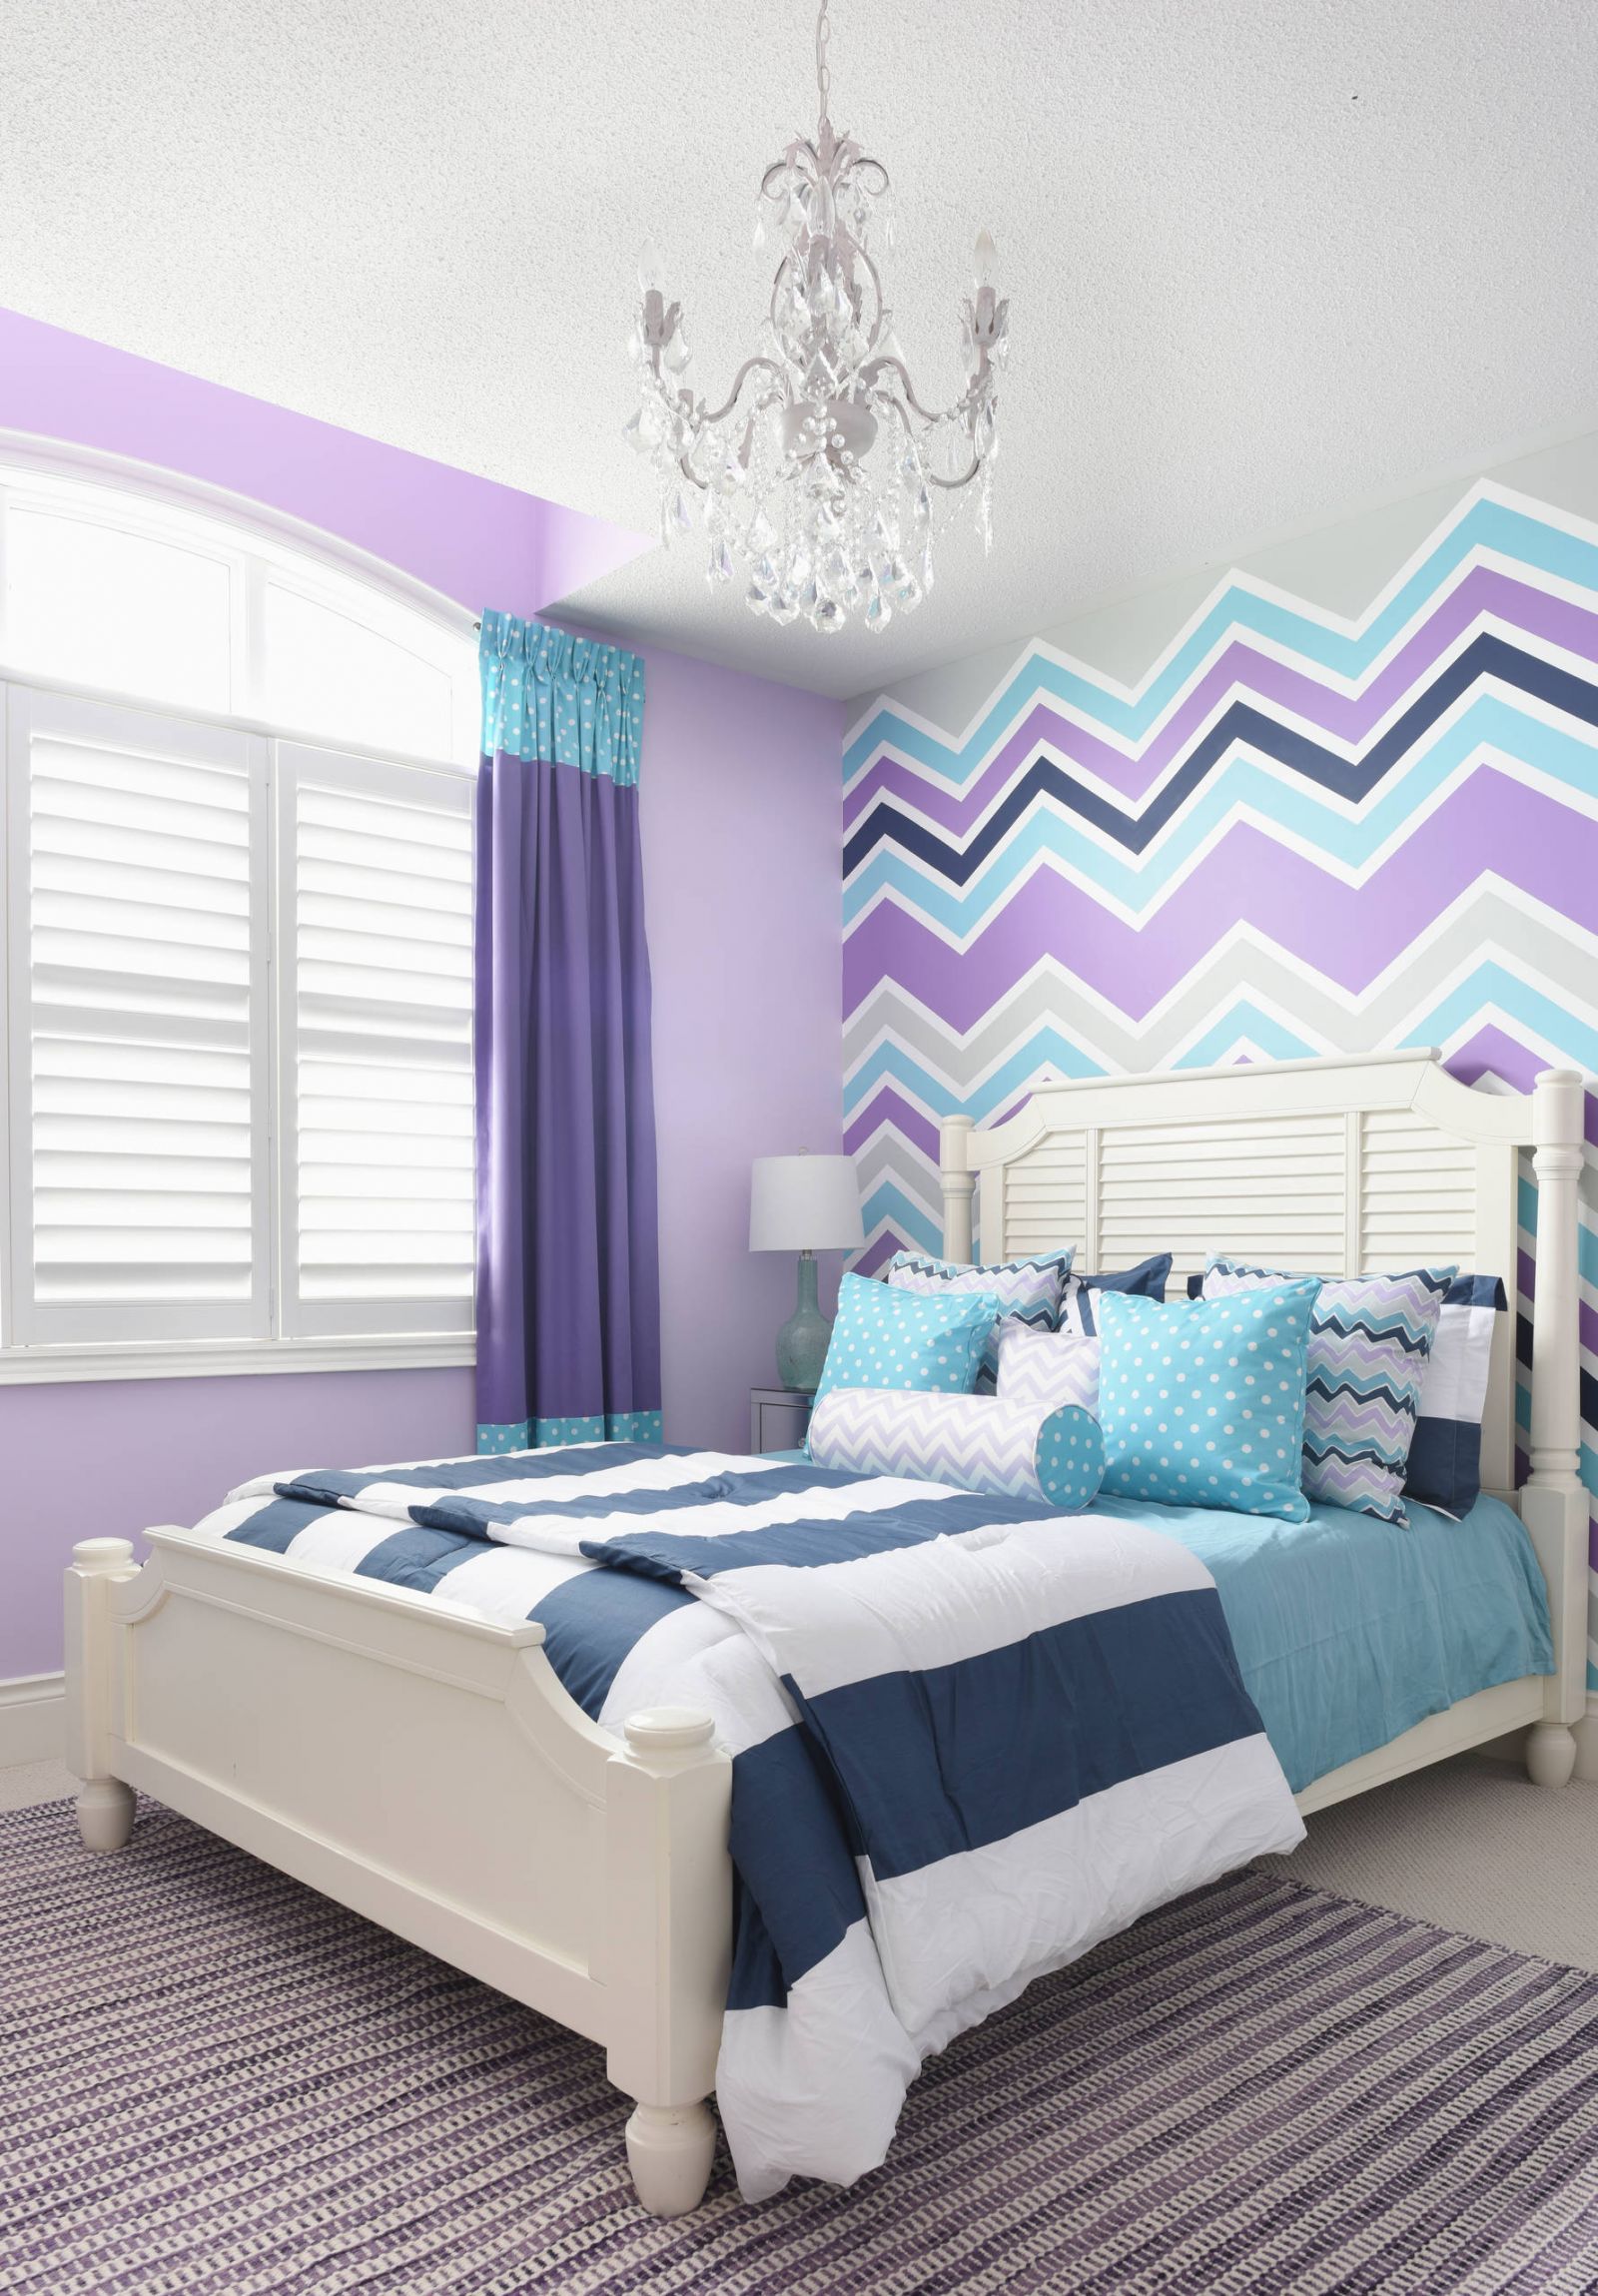 Thiết kế phòng ngủ màu tím pastel kết hợp với màu sáng